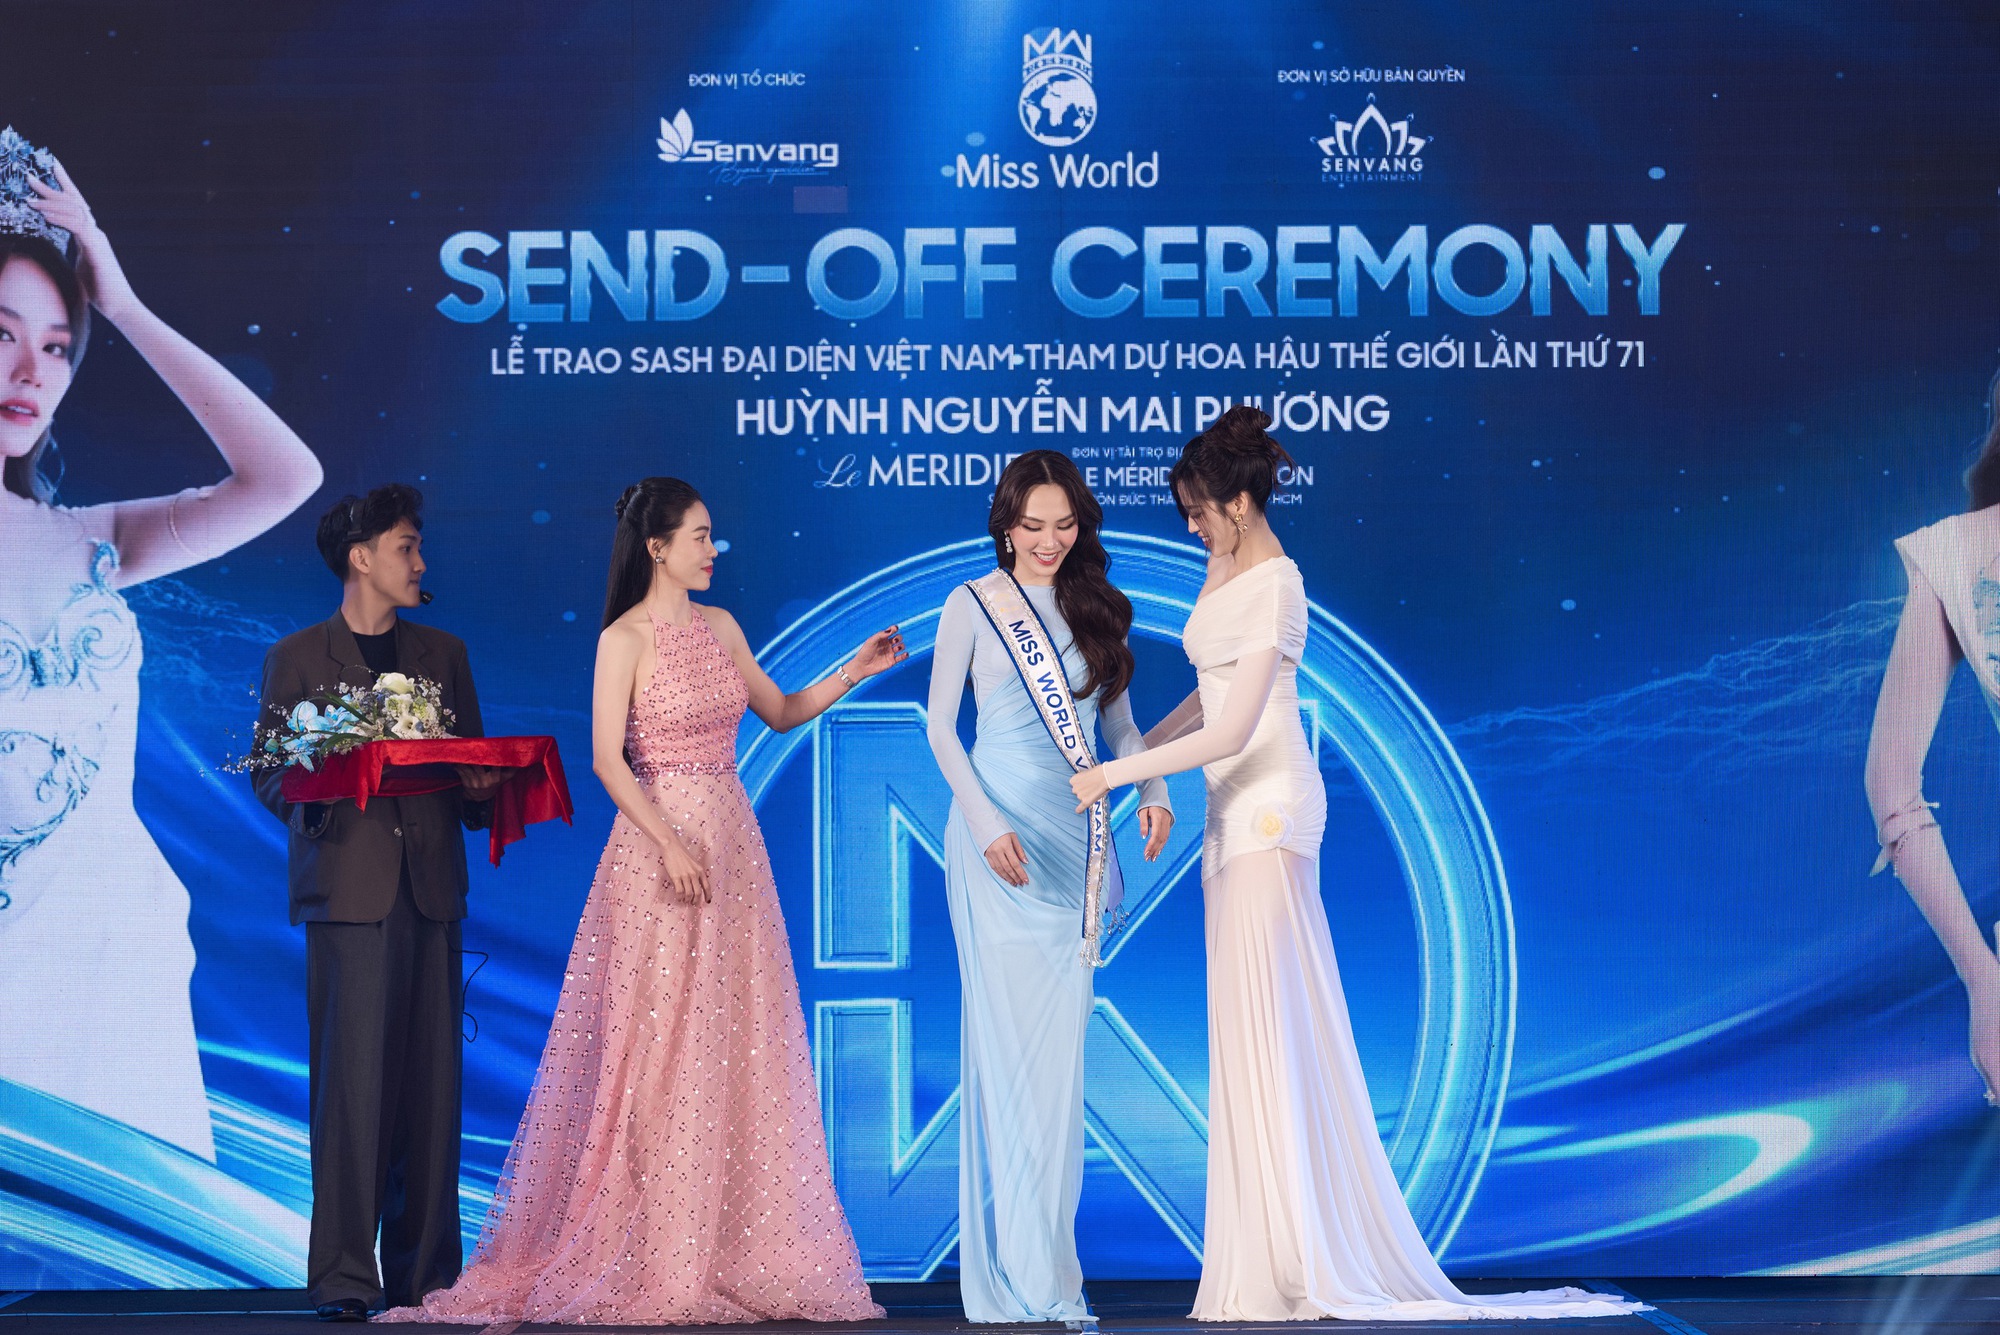 Hoa hậu Mai Phương công bố loạt váy áo tại Miss World, 1 nhân vật đặc biệt và dàn Hậu đình đám góp mặt- Ảnh 2.